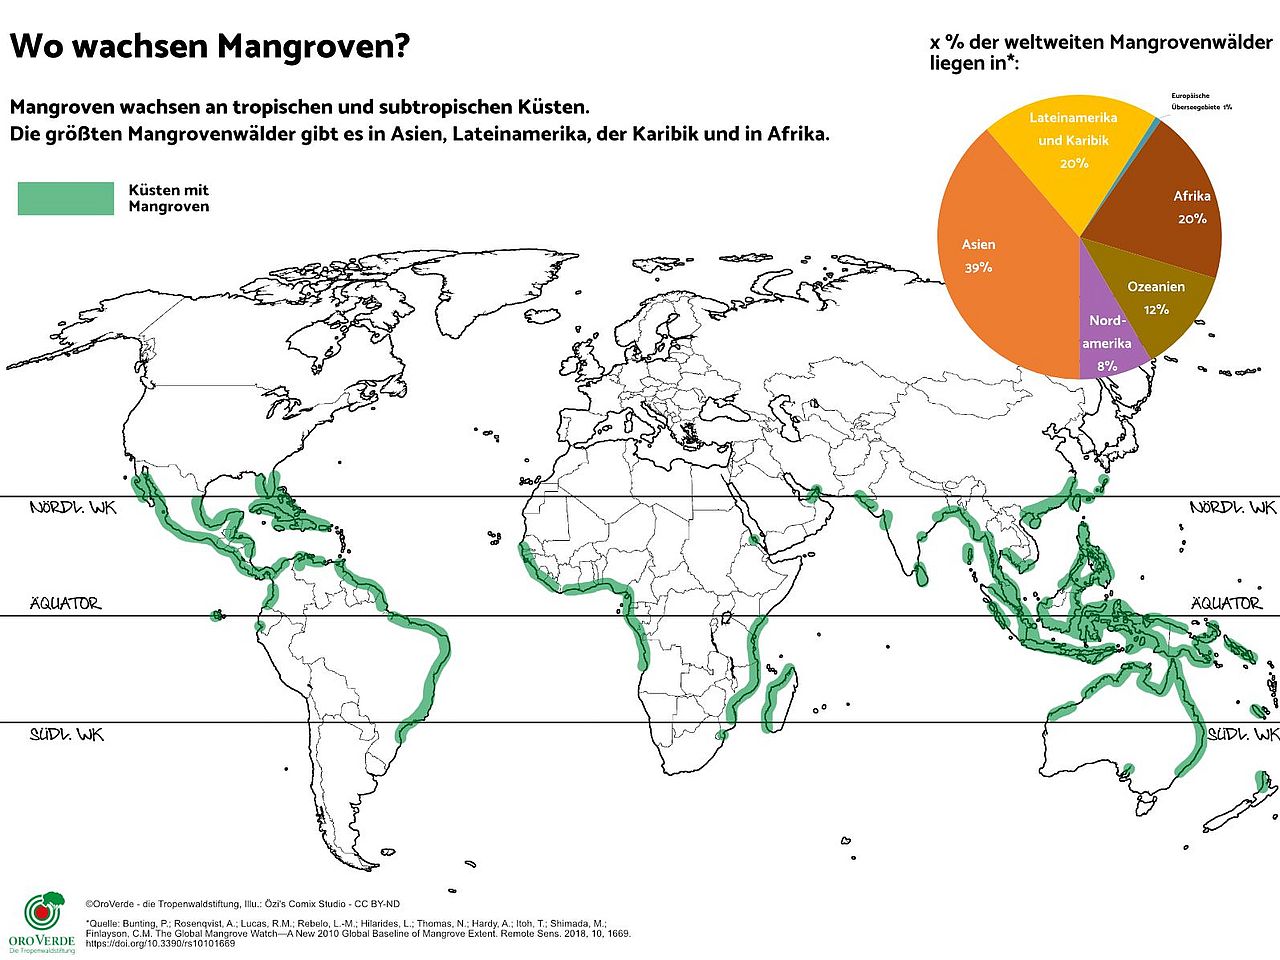 Die Mangroven Karte zeigt, dass Mangroven rund um den Äquator an den tropischen und subtropischen Küsten wachsen. Der größte Mangrovenbestand liegt in Asien, Afrika und Lateinamerika & Karibik. ©OroVerde nach Giri et al. (2011) / Illustration: Özi´s Comix Studio